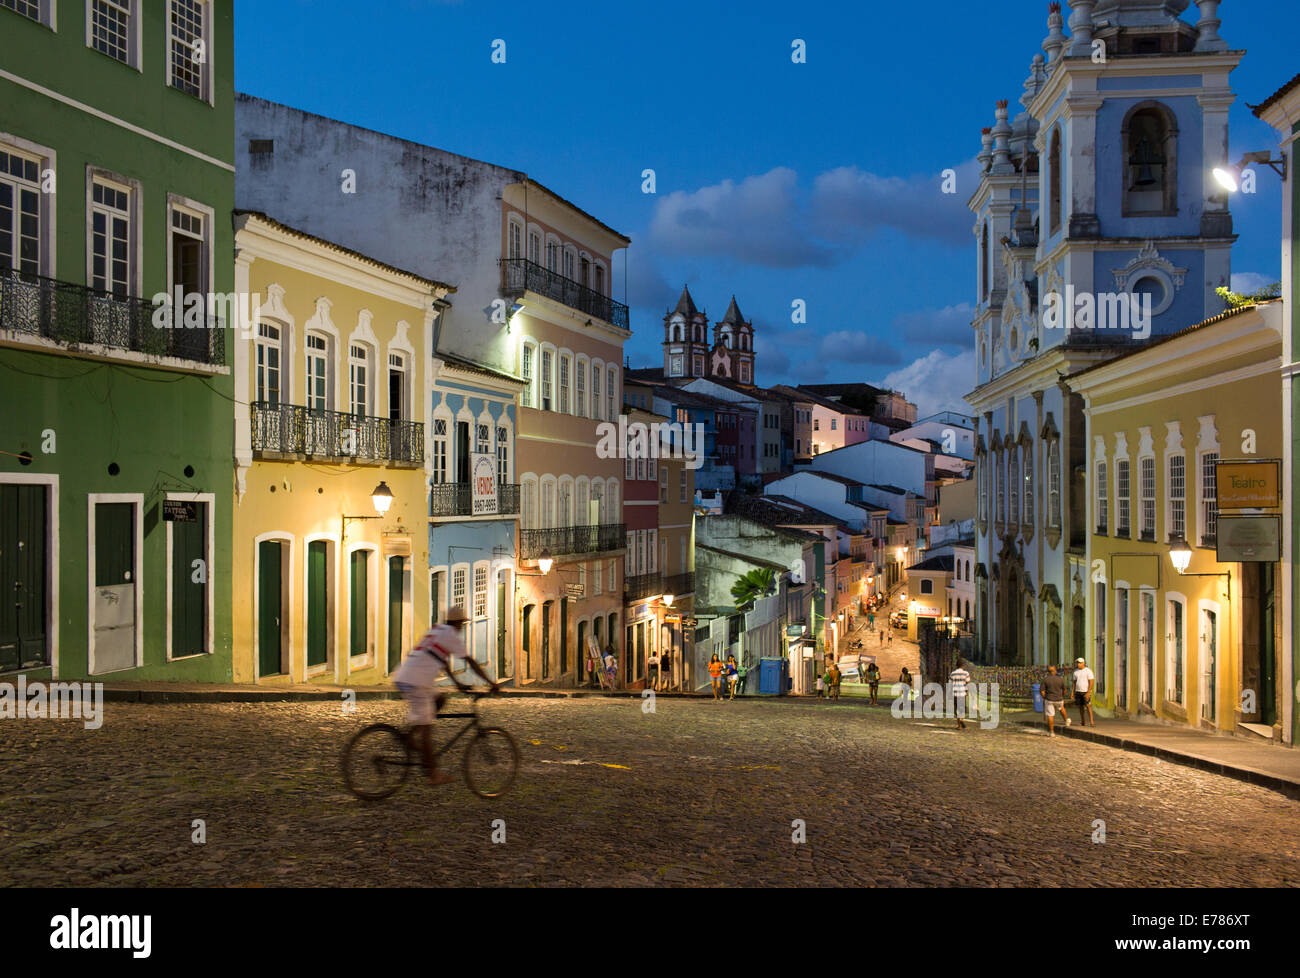 Le Pelourinho, dans la vieille ville de Salvador de Bahia, la nuit. Brésil Banque D'Images